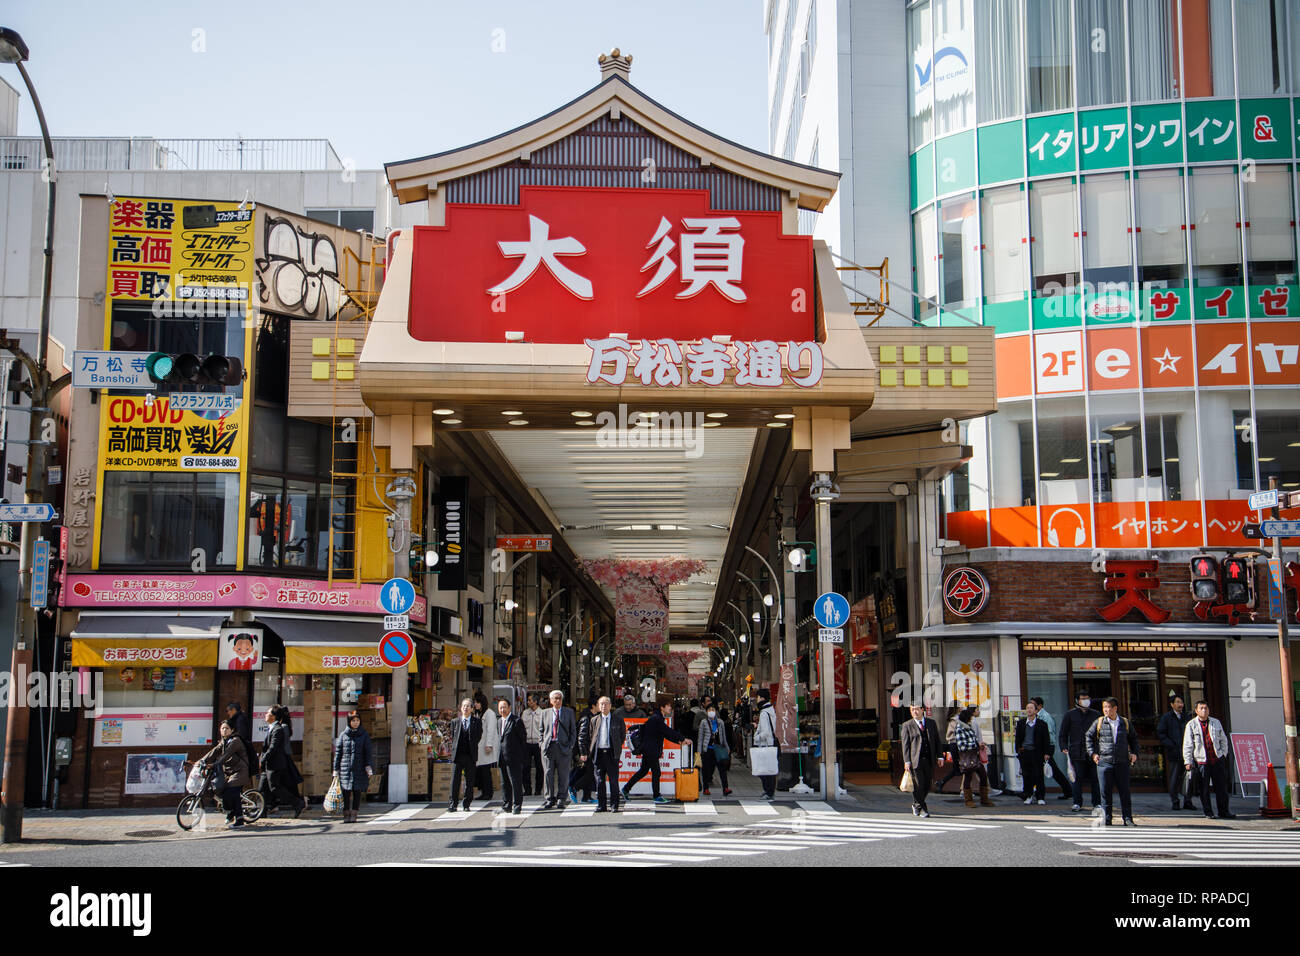 Blick auf den Haupteingang der Straße in Osu. Osu ist einer der bekanntesten touristischen Shopping Spots in Nagoya, Aichi, Japan. Die Osu Einkaufsviertel ist seit 400 Jahren als die kommerzielle Straßen in einem Gebietsschema mit einer Konzentration von buddhistischen Tempeln, und von Anfang an als Zentrum für traditionelle Unterhaltung und Kultur geblüht hat. Stockfoto